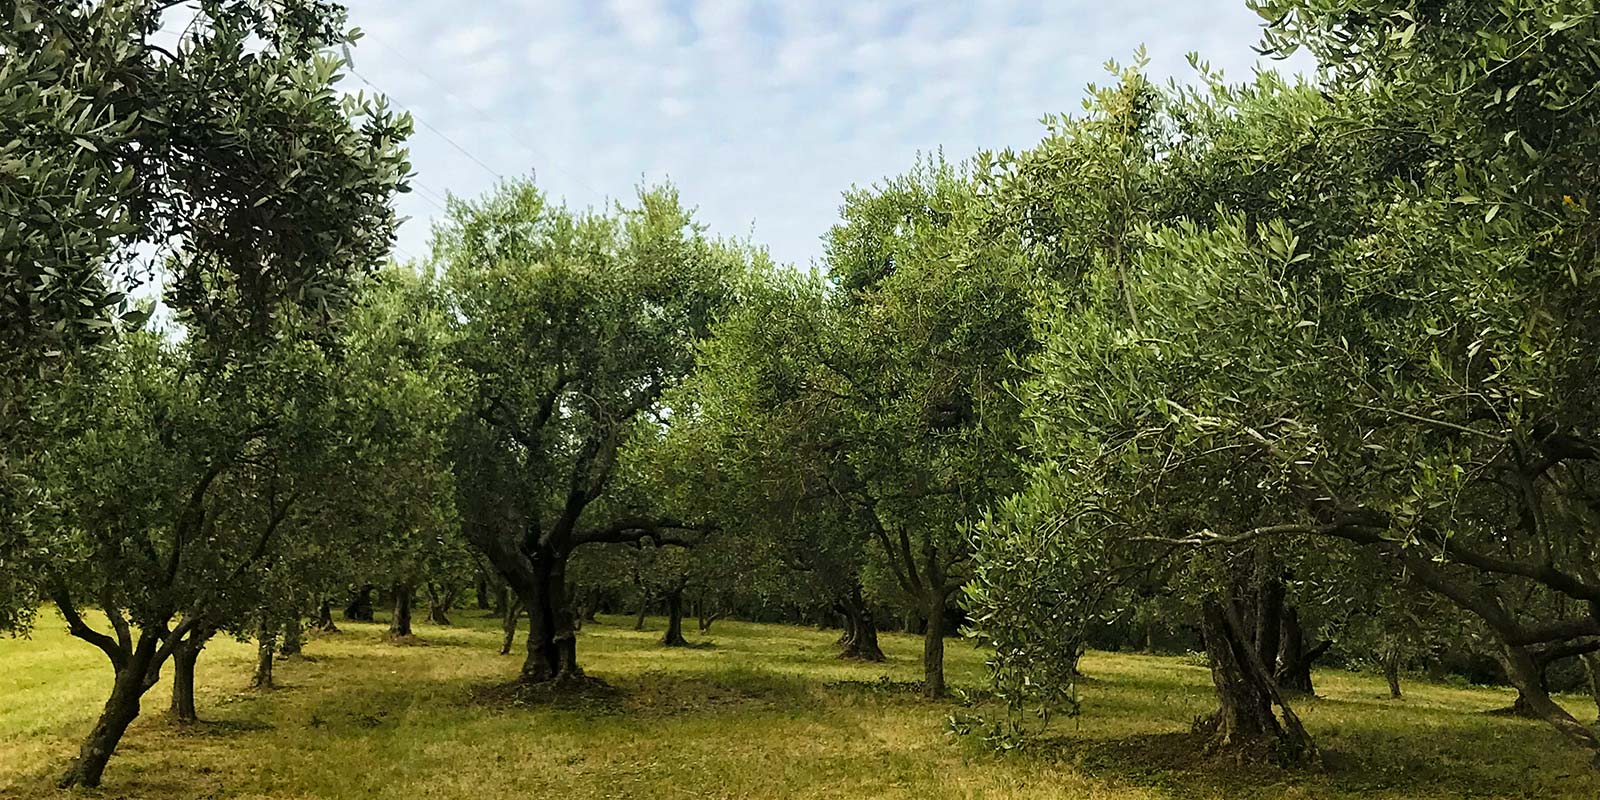 Immagine dell'olivara con gli ulivi nel campo